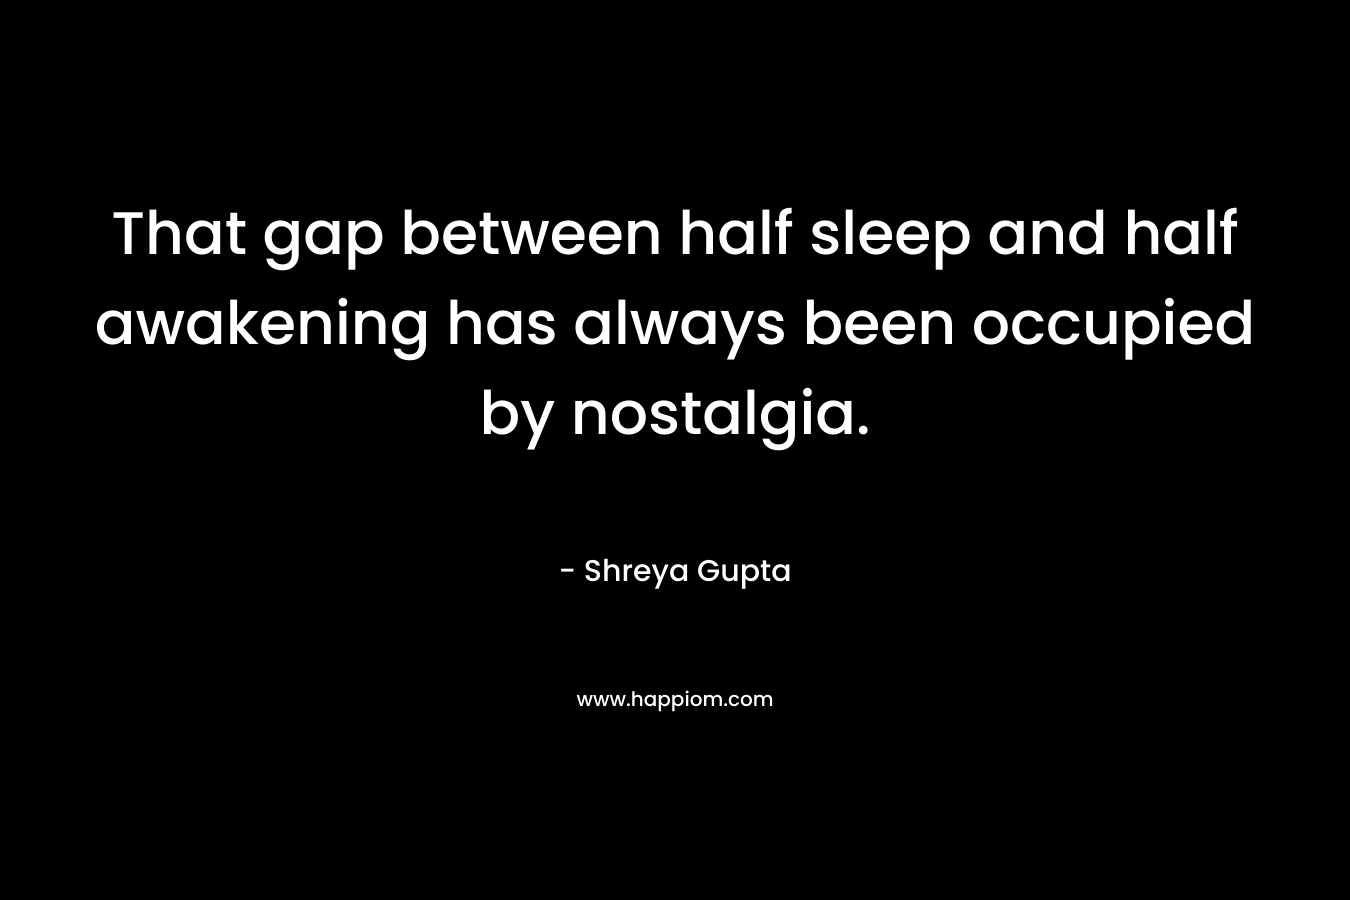 That gap between half sleep and half awakening has always been occupied by nostalgia.